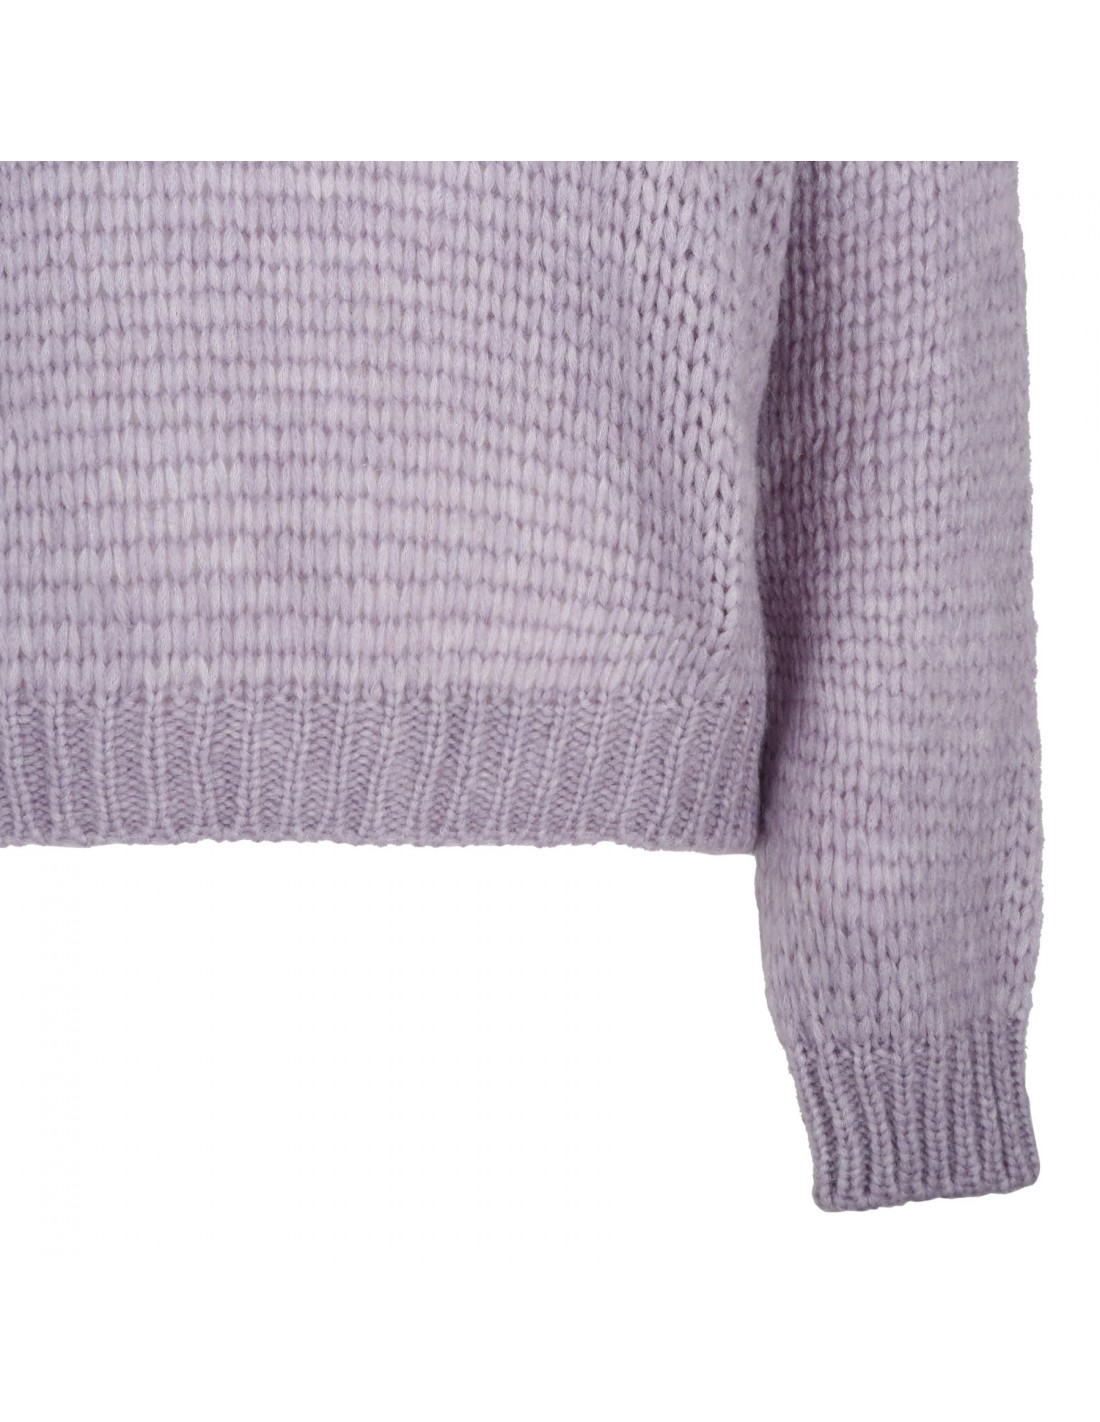 Lilac alpaca blend sweater